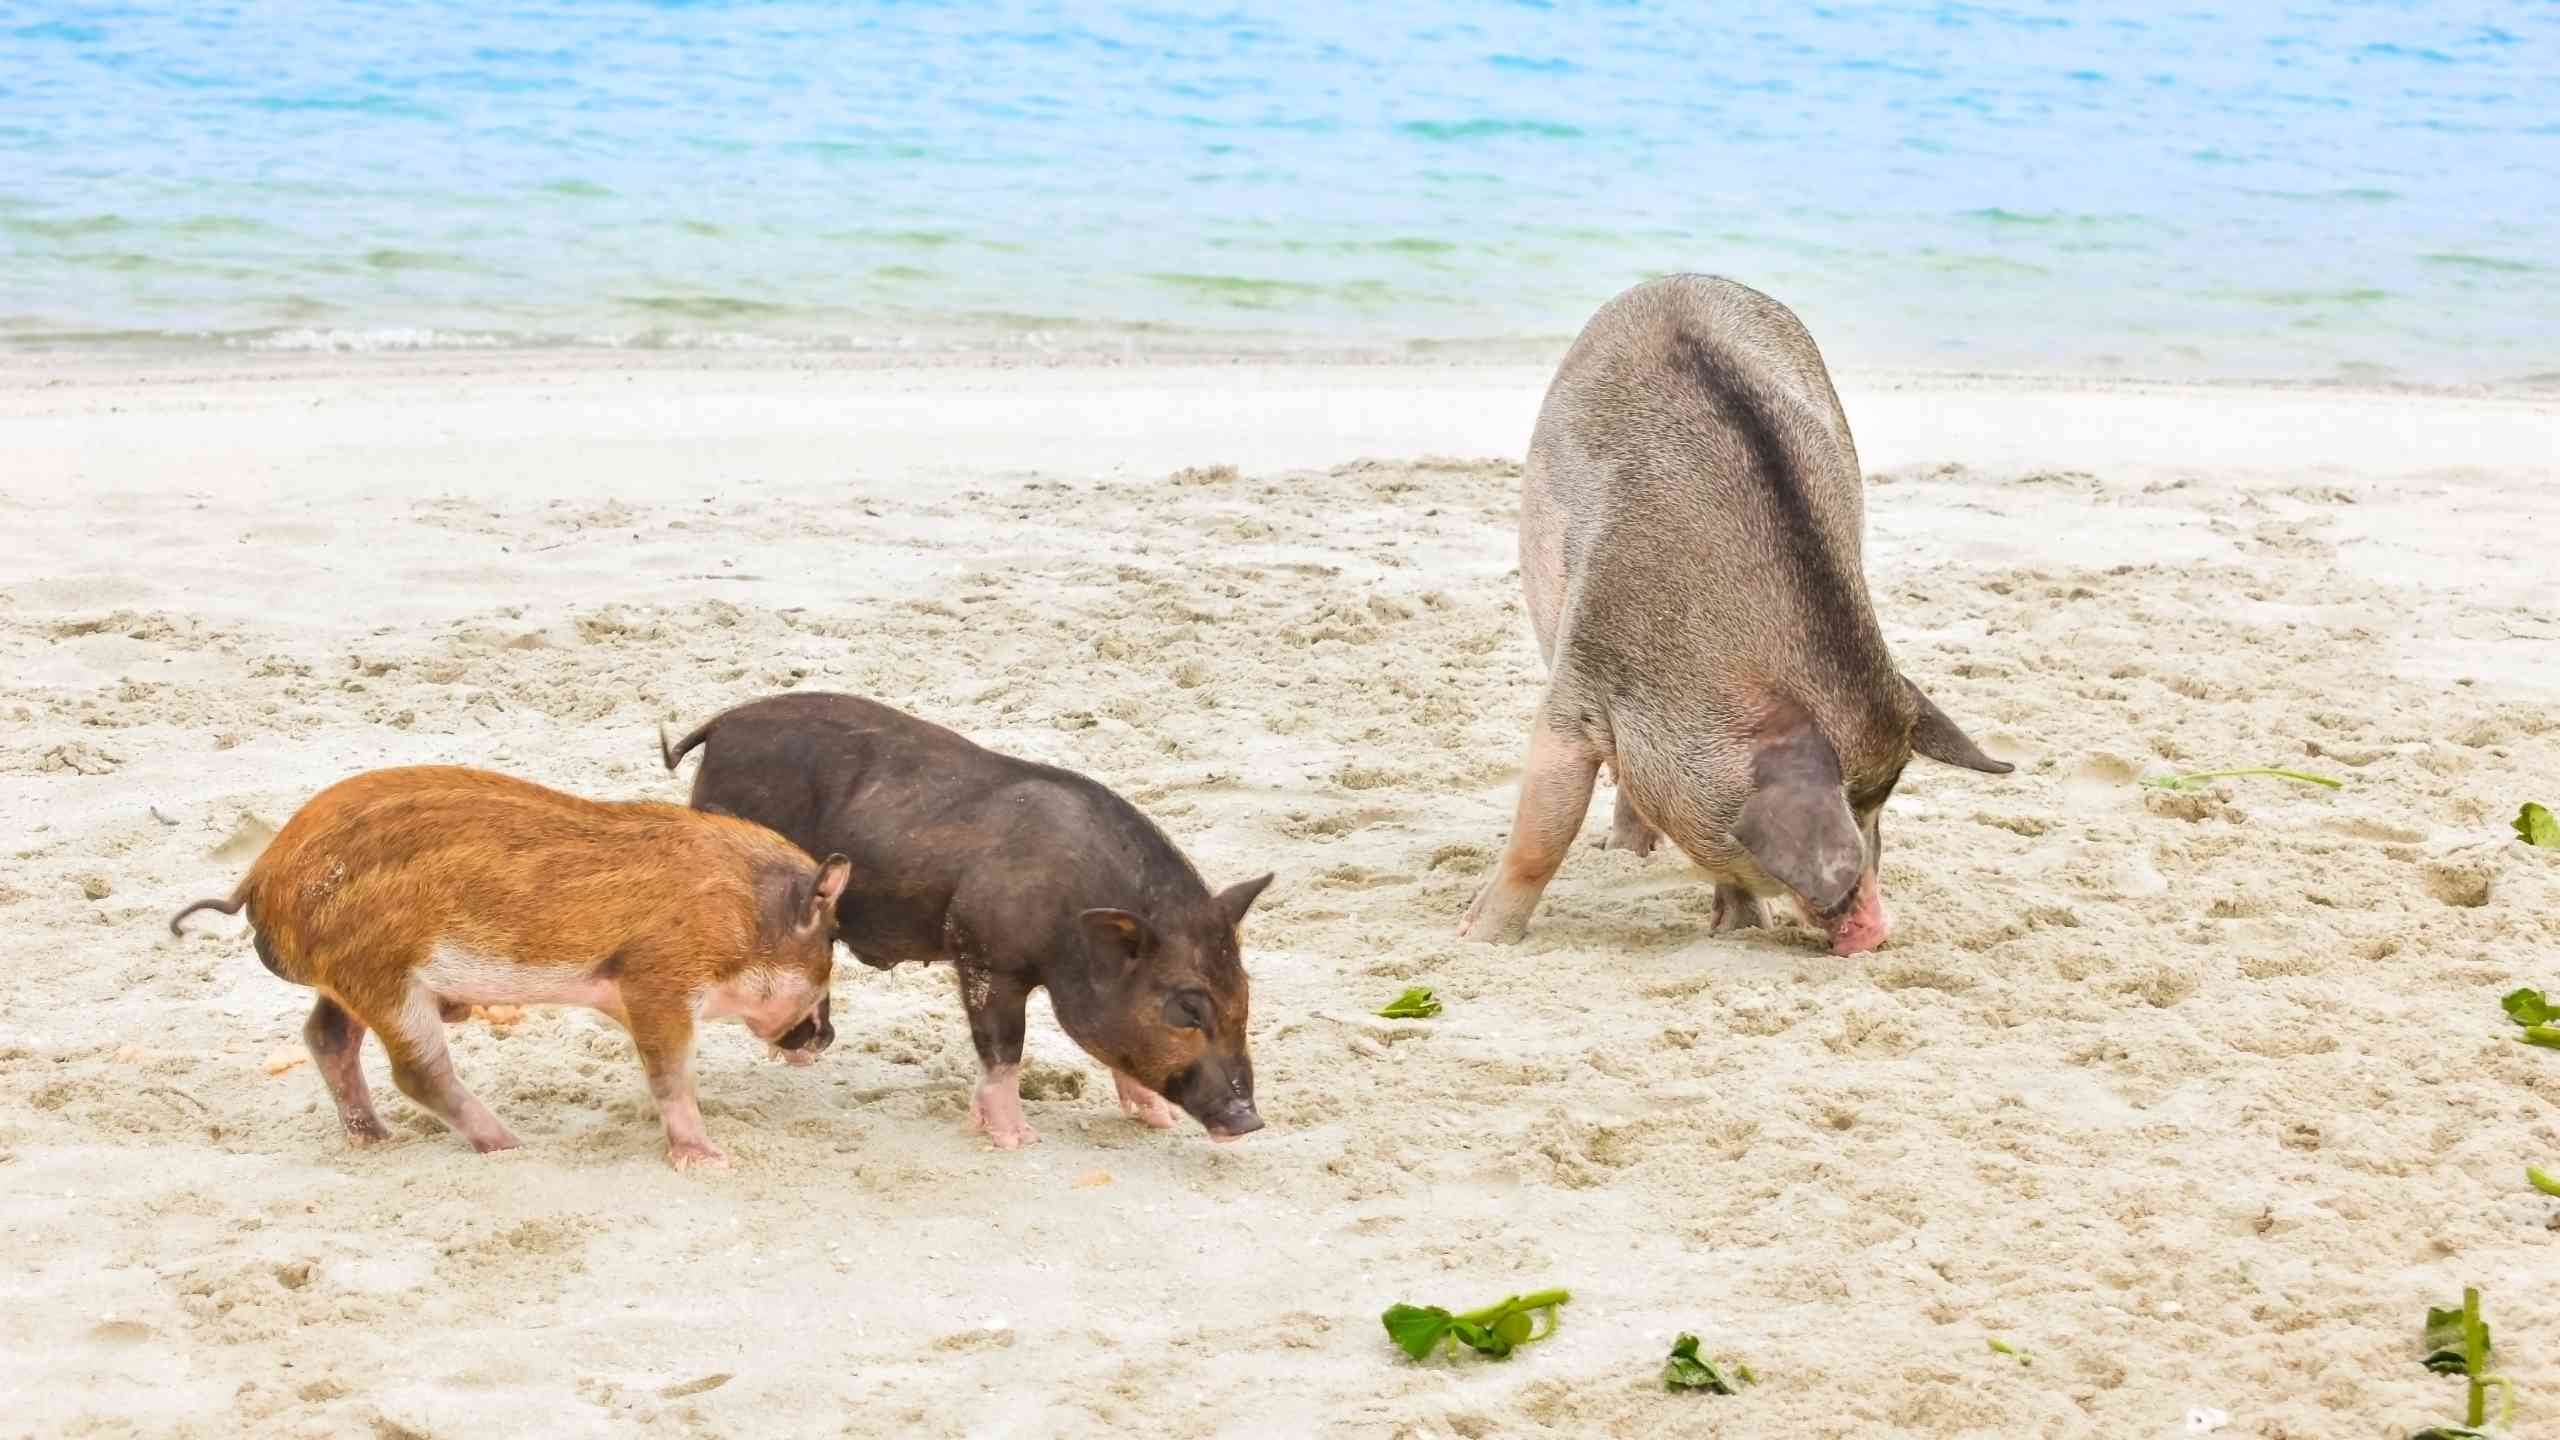 Pigs on Koh Madsum pig island - Samui